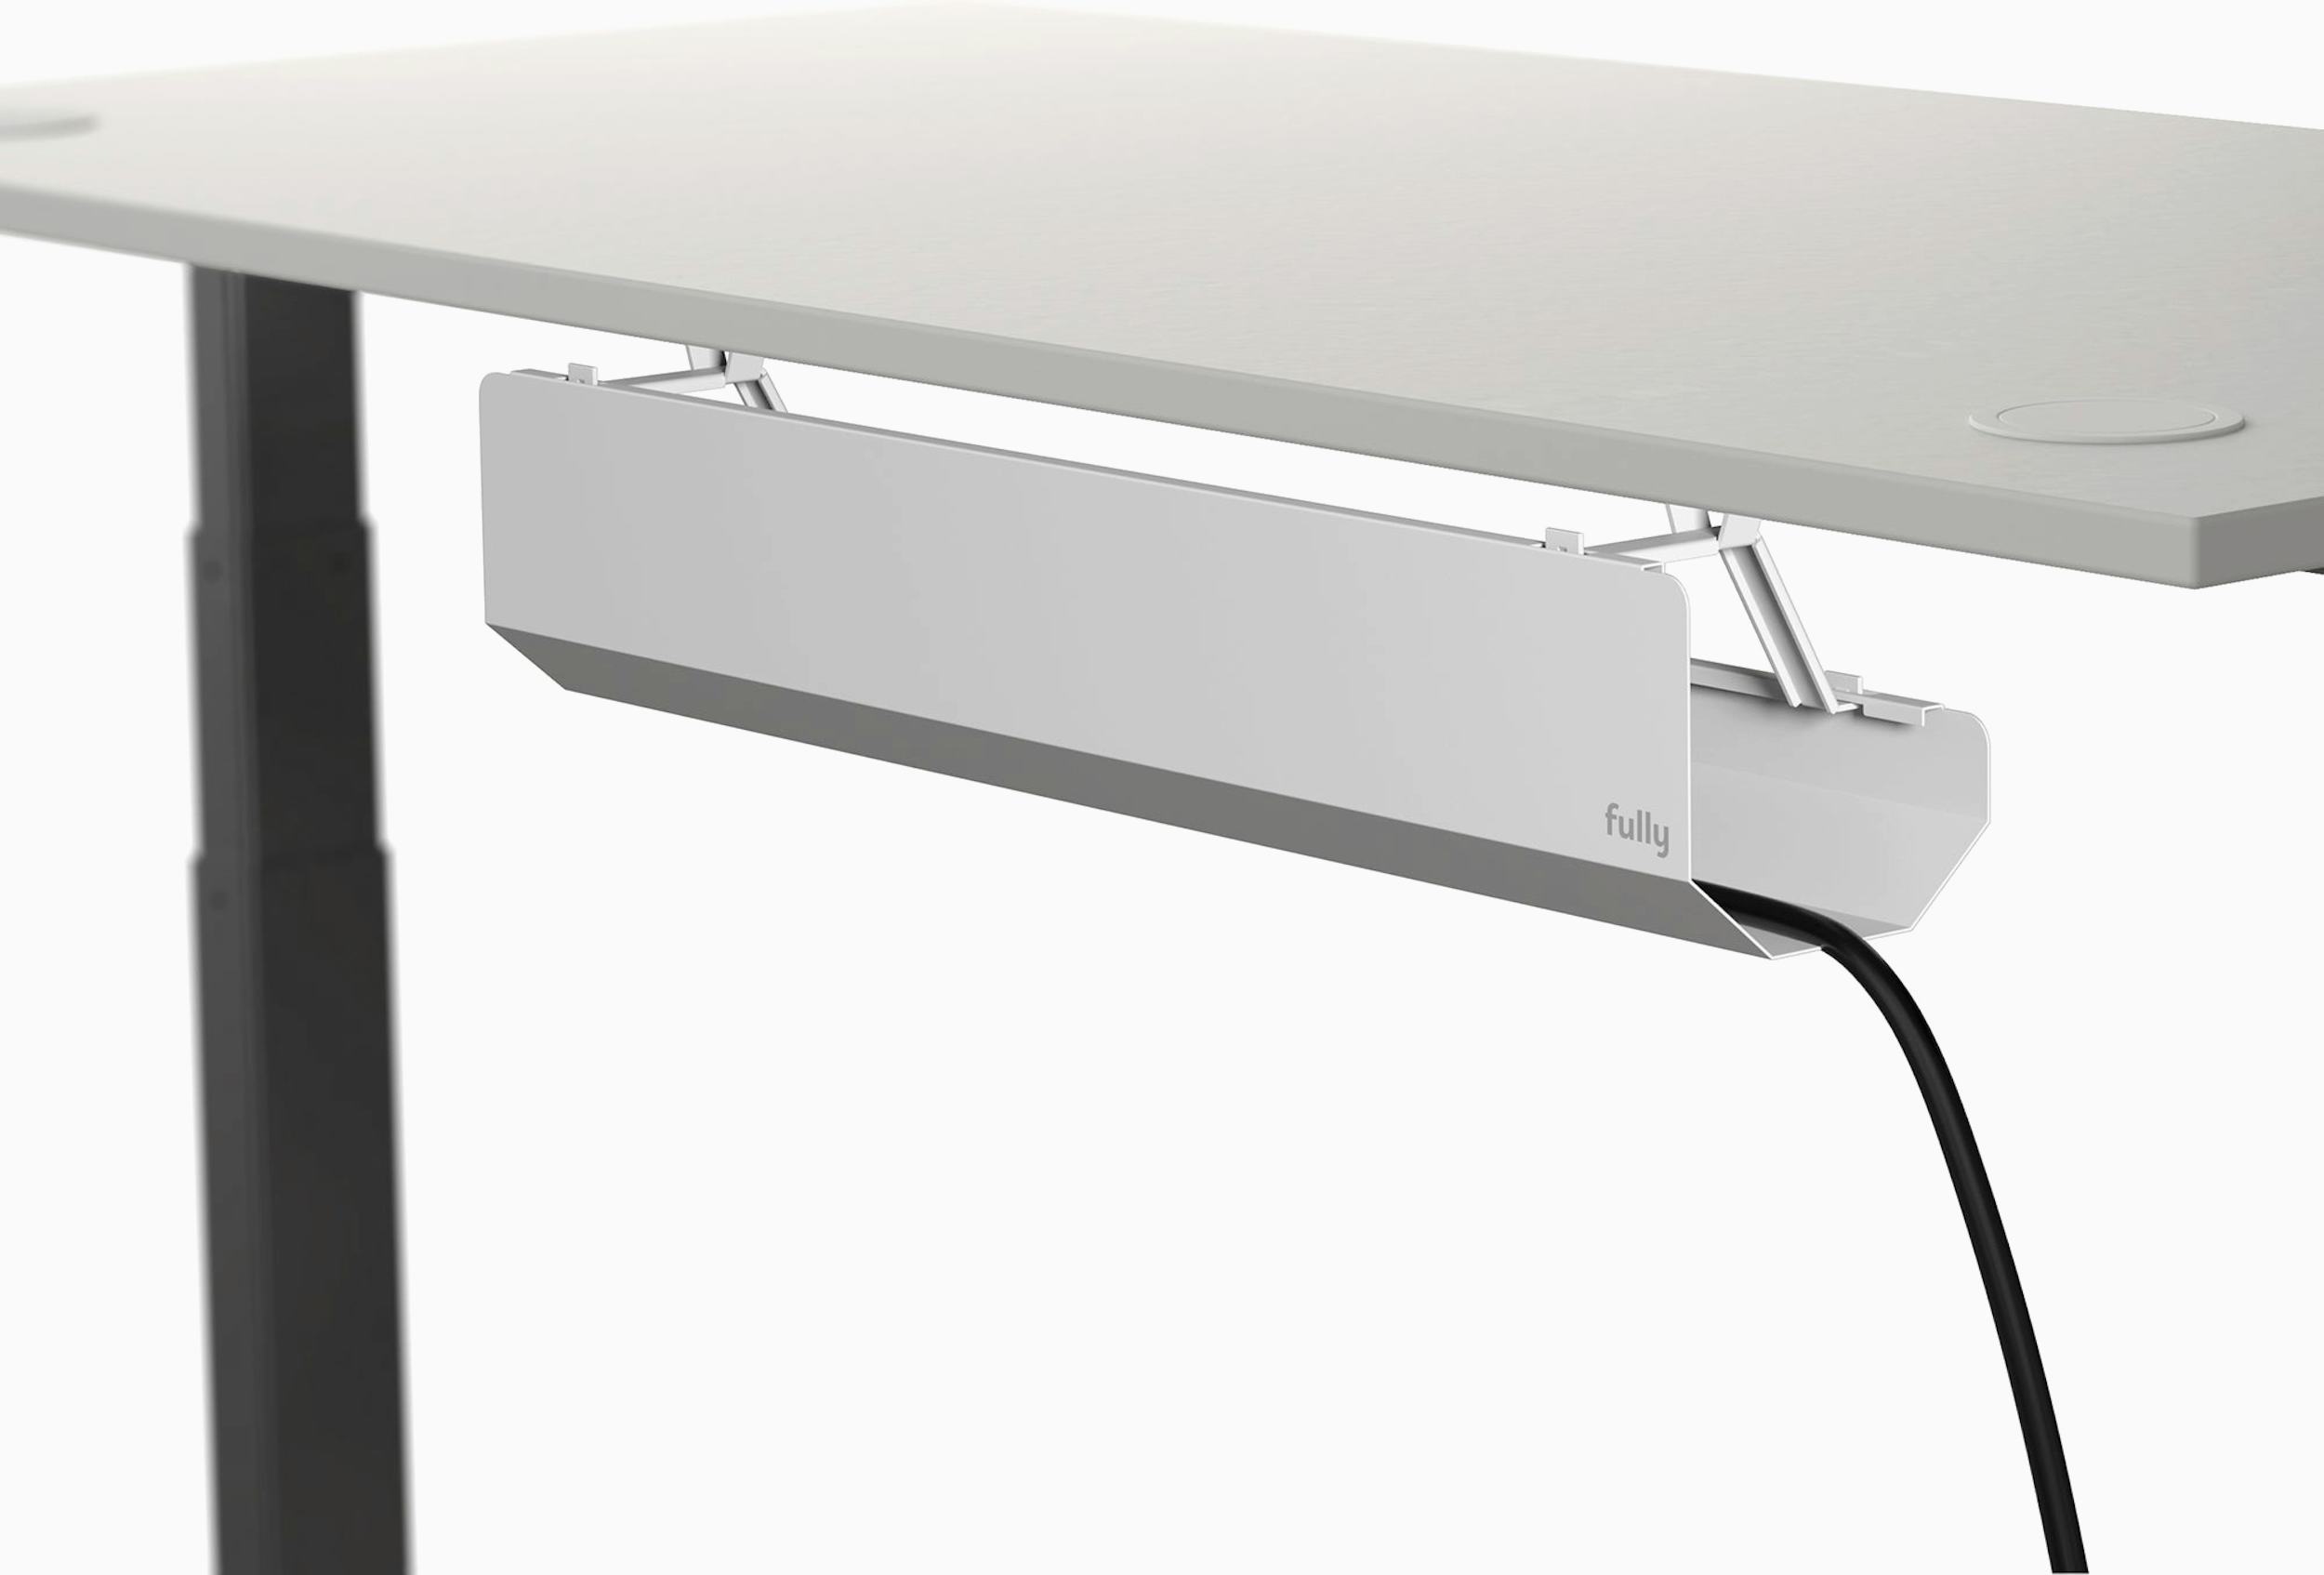 Decorative Desk Cord Cover, 60 x 2 x 1 Cover, White - Reliable Paper